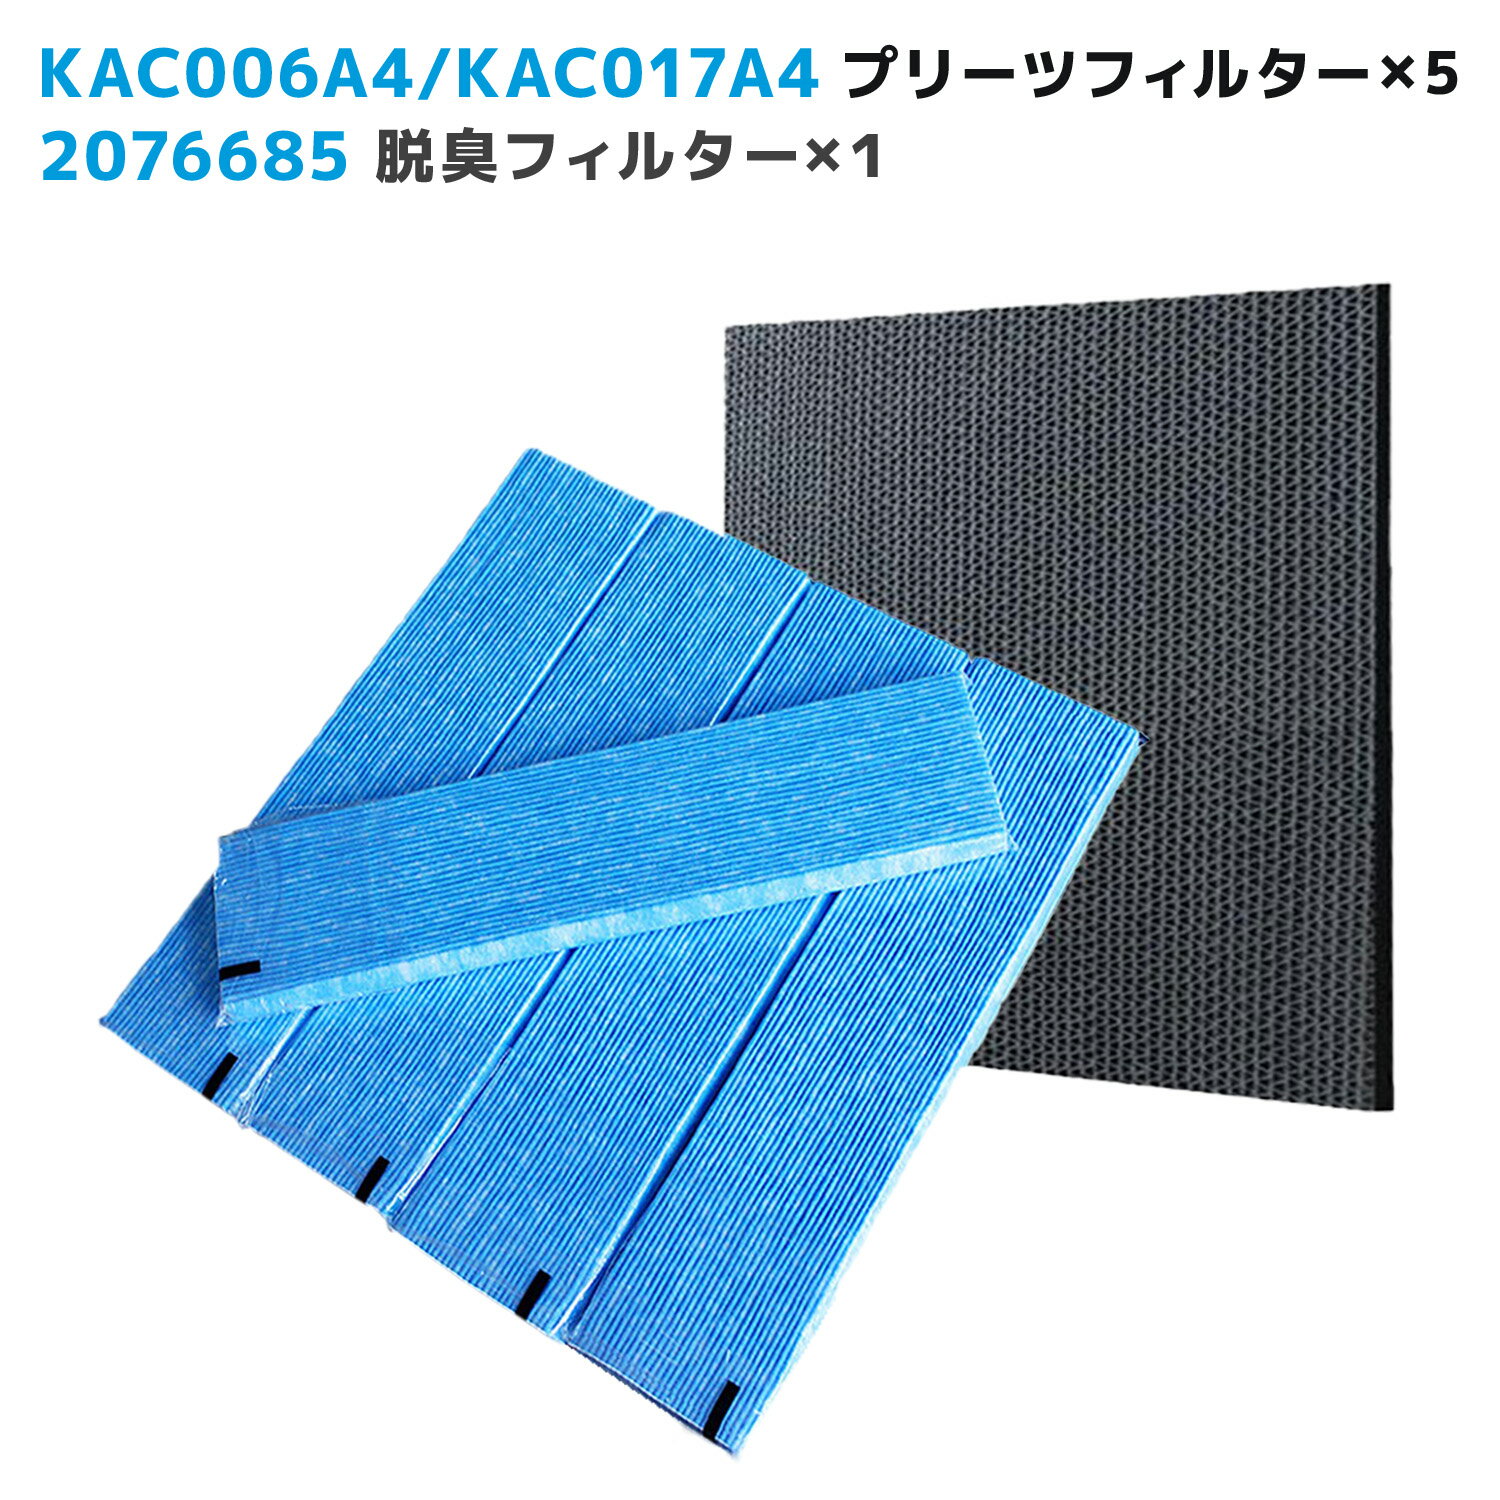 対応品番:KAC006A4と後継品 KAC017A4(99A0454) 5枚入り 脱臭フィルター 2076685 1枚 空気清浄機交換用フィルター 交換用プリーツフィルタ 交換用集塵プリーツフィルター （汎用型 非純正品 ）